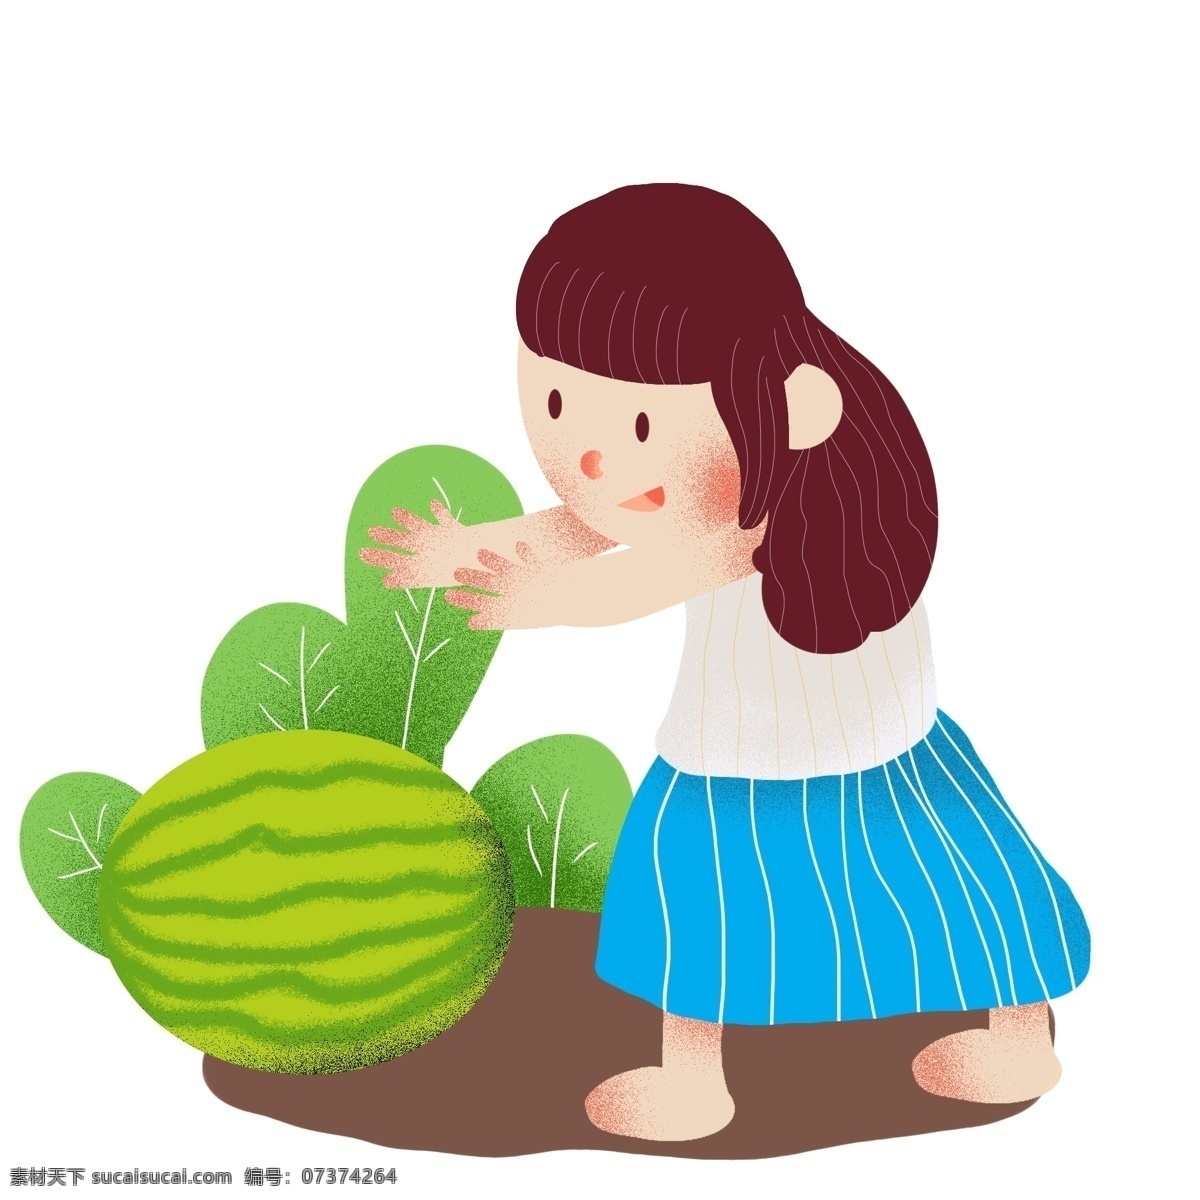 夏天 小女孩 摘 西瓜 夏天来了 吃西瓜 人物 夏季 夏至 大暑 小孩 小暑 清爽 草丛 草地 解暑 零食